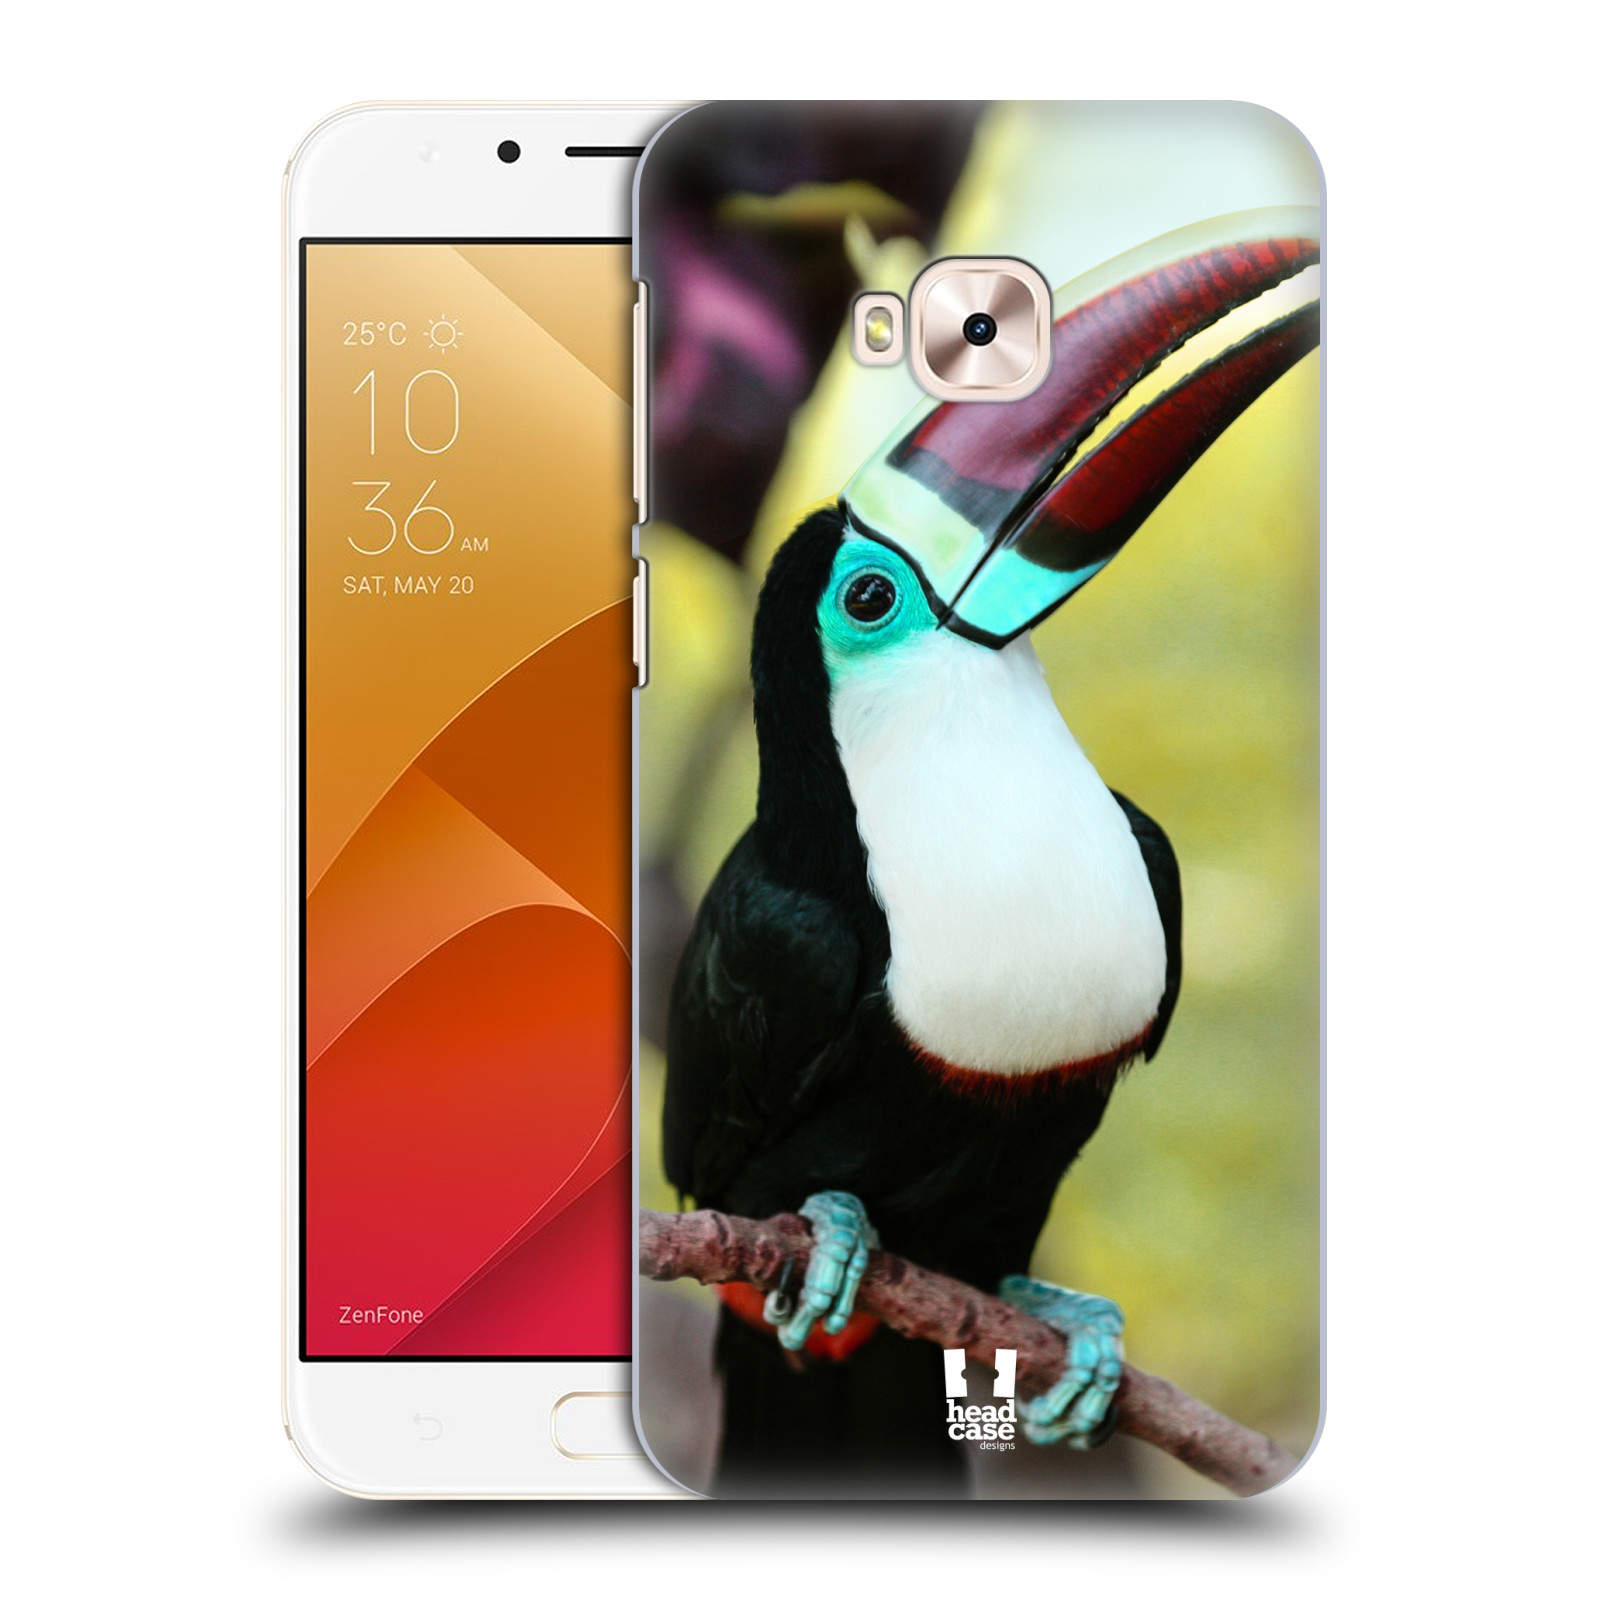 HEAD CASE plastový obal na mobil Asus Zenfone 4 Selfie Pro ZD552KL vzor slavná zvířata foto tukan